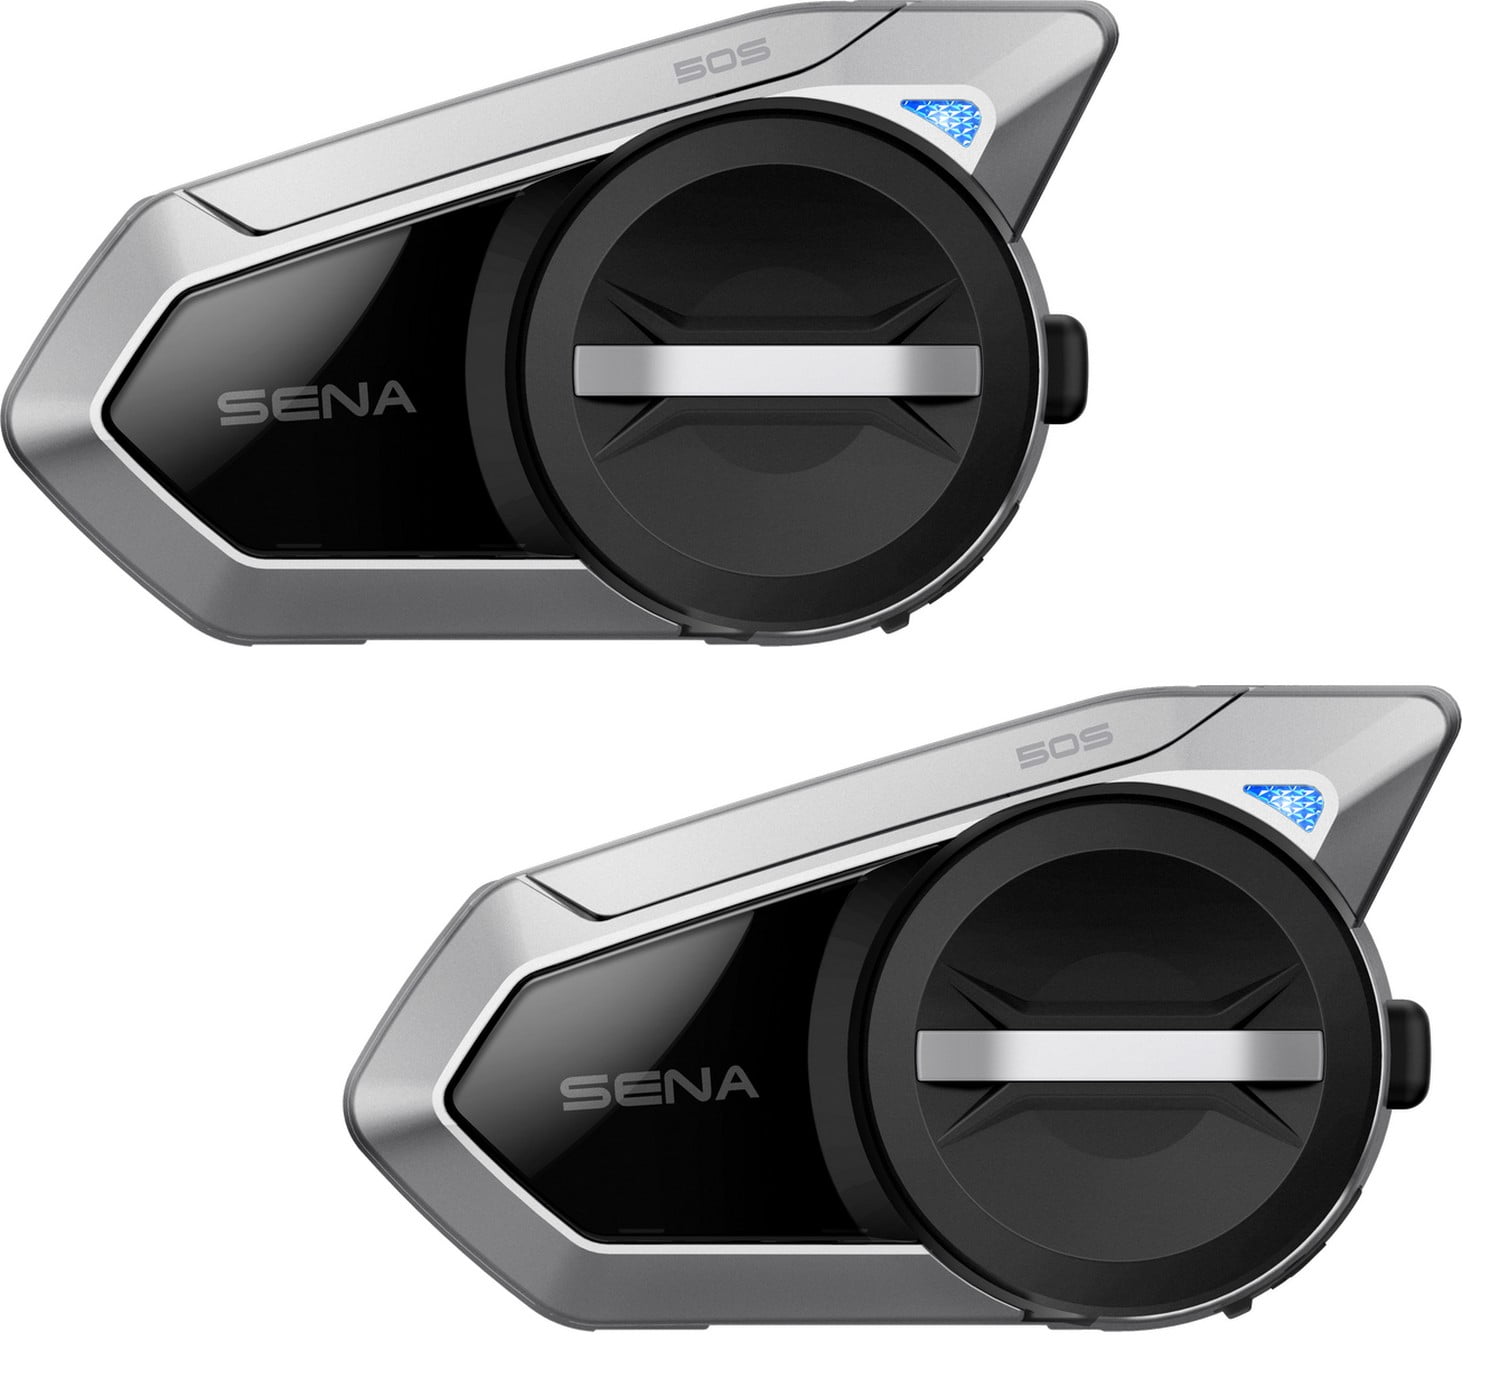 SENA 50S Bluetooth Comunication System with Mesh Intercom Dual Pack